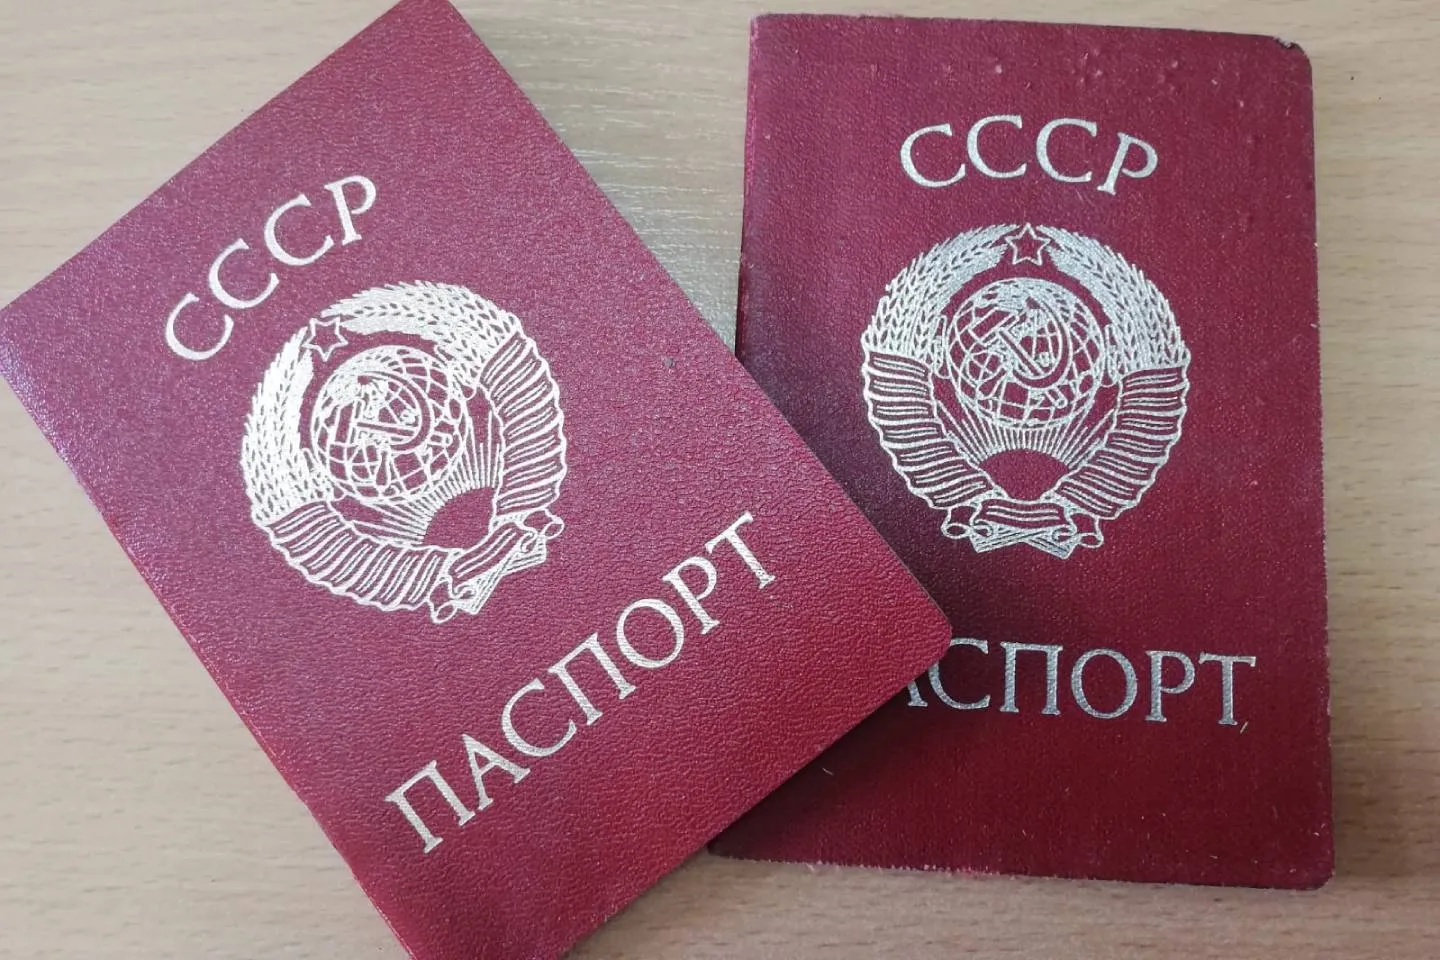 Усть-Каменогорск и ВКО / Почти 100 человек живут с недействительными паспортами в ВКО - полиция